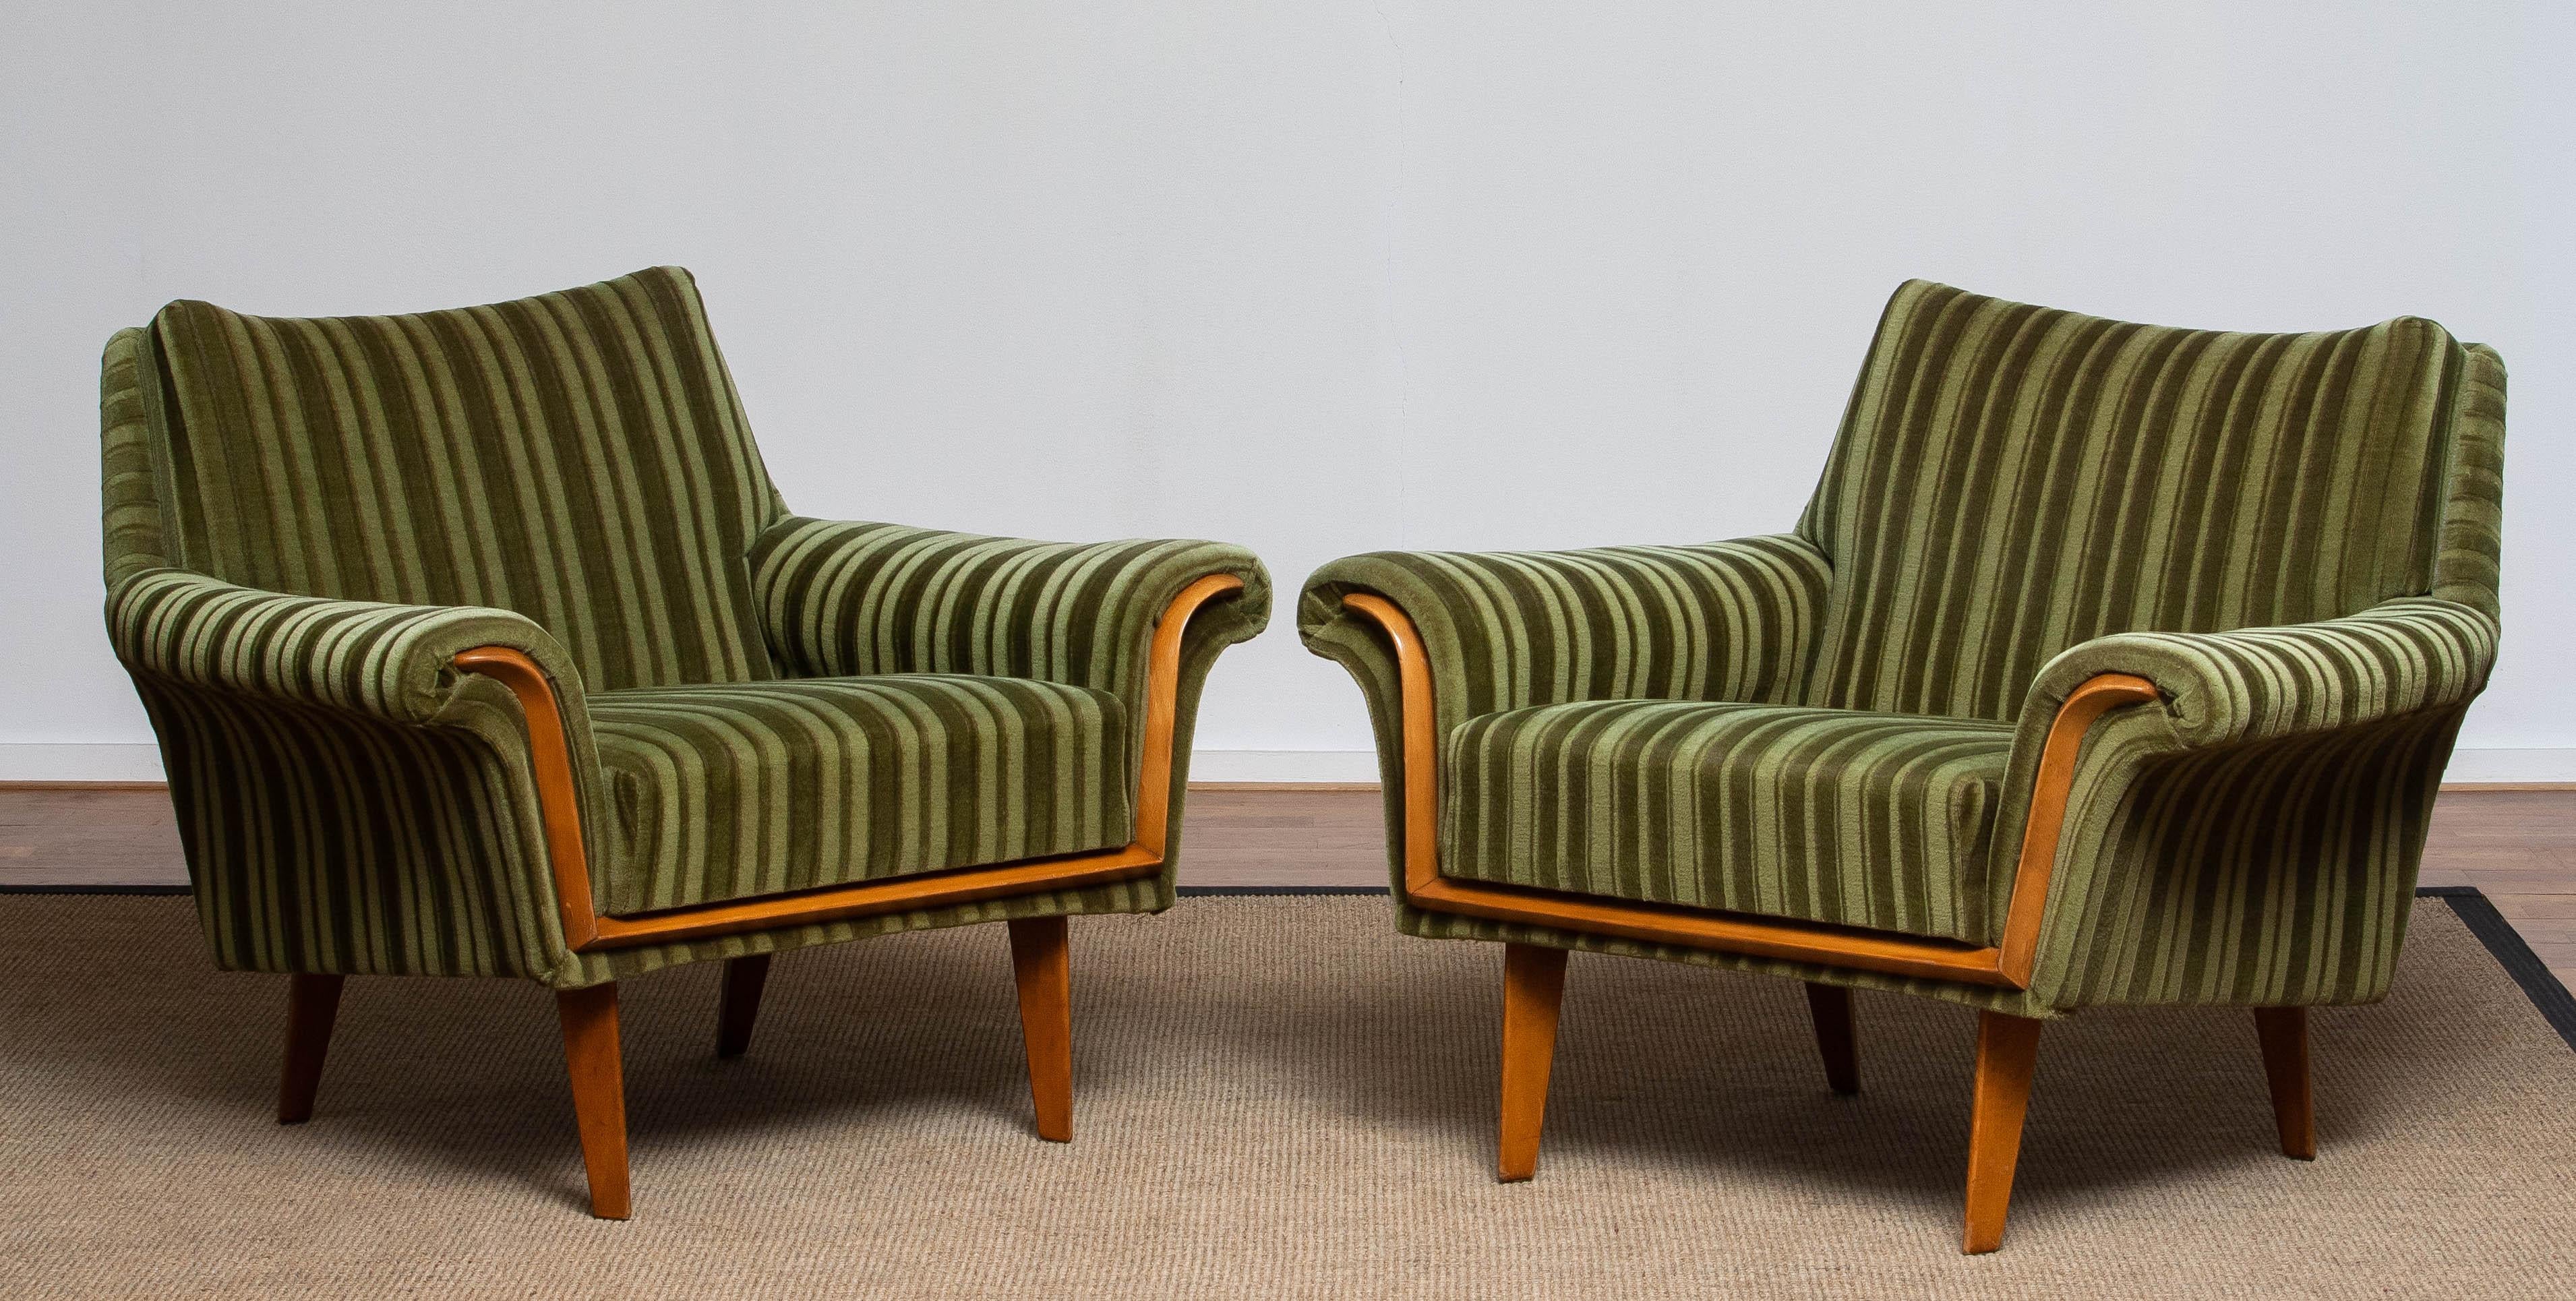 Absolut atemberaubende Satz von zwei Lounge / Sessel / Club Sessel aus den 1950er Jahren in Italien gemacht stil gepolstert mit dem ursprünglichen grünen Samt / Velours Stoff. Stützt gut und sitzt sehr bequem.
Beide sind insgesamt in sehr gutem